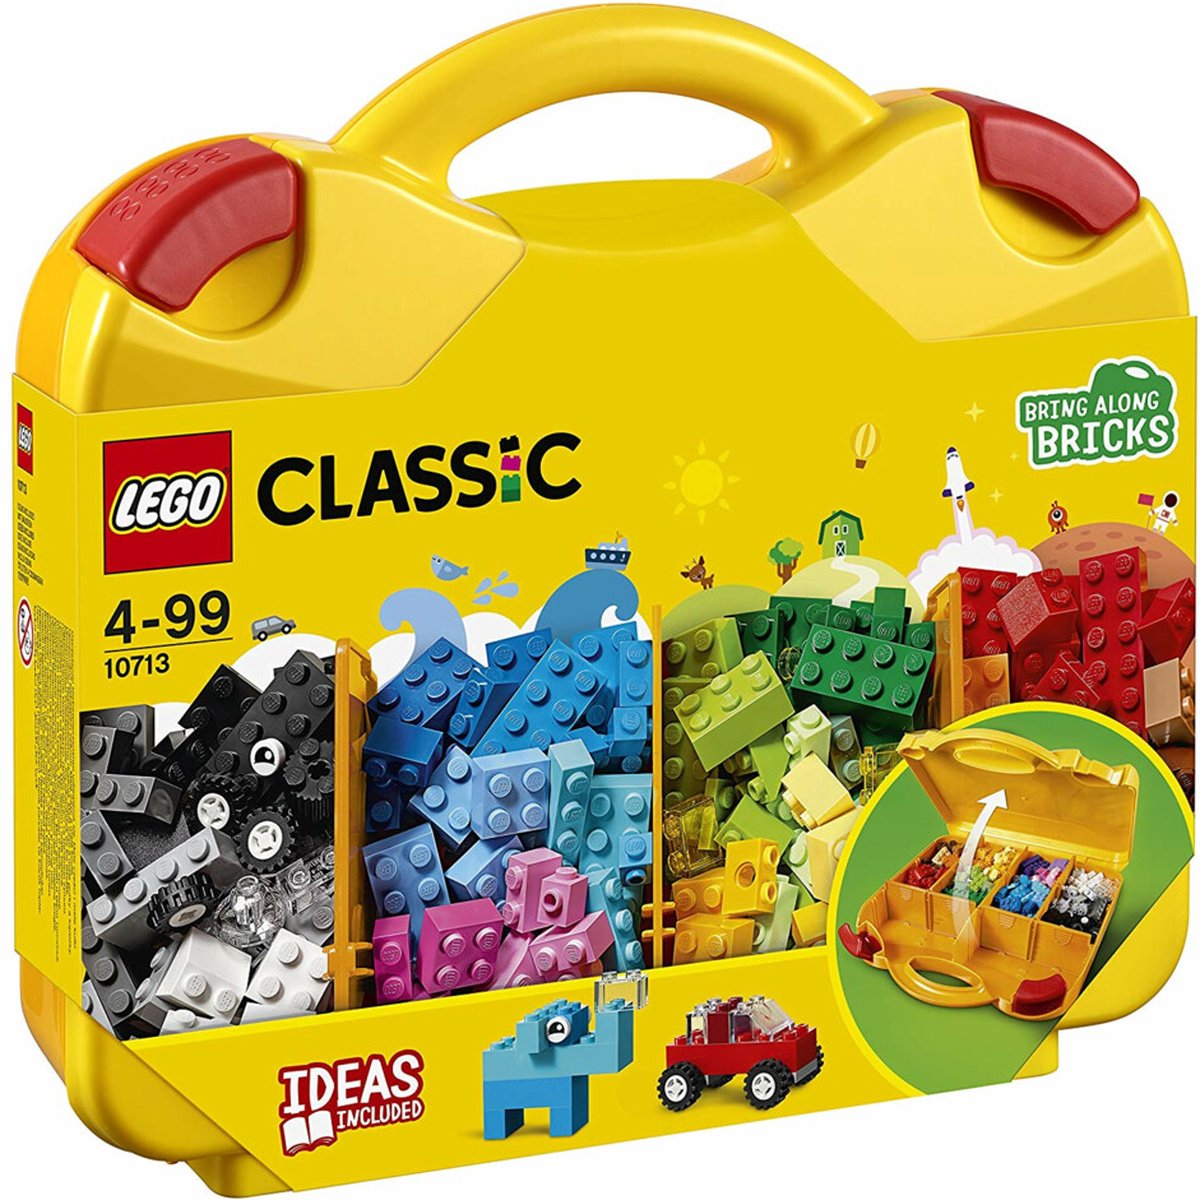 LEGO® Classic 11023 La plaque de construction verte